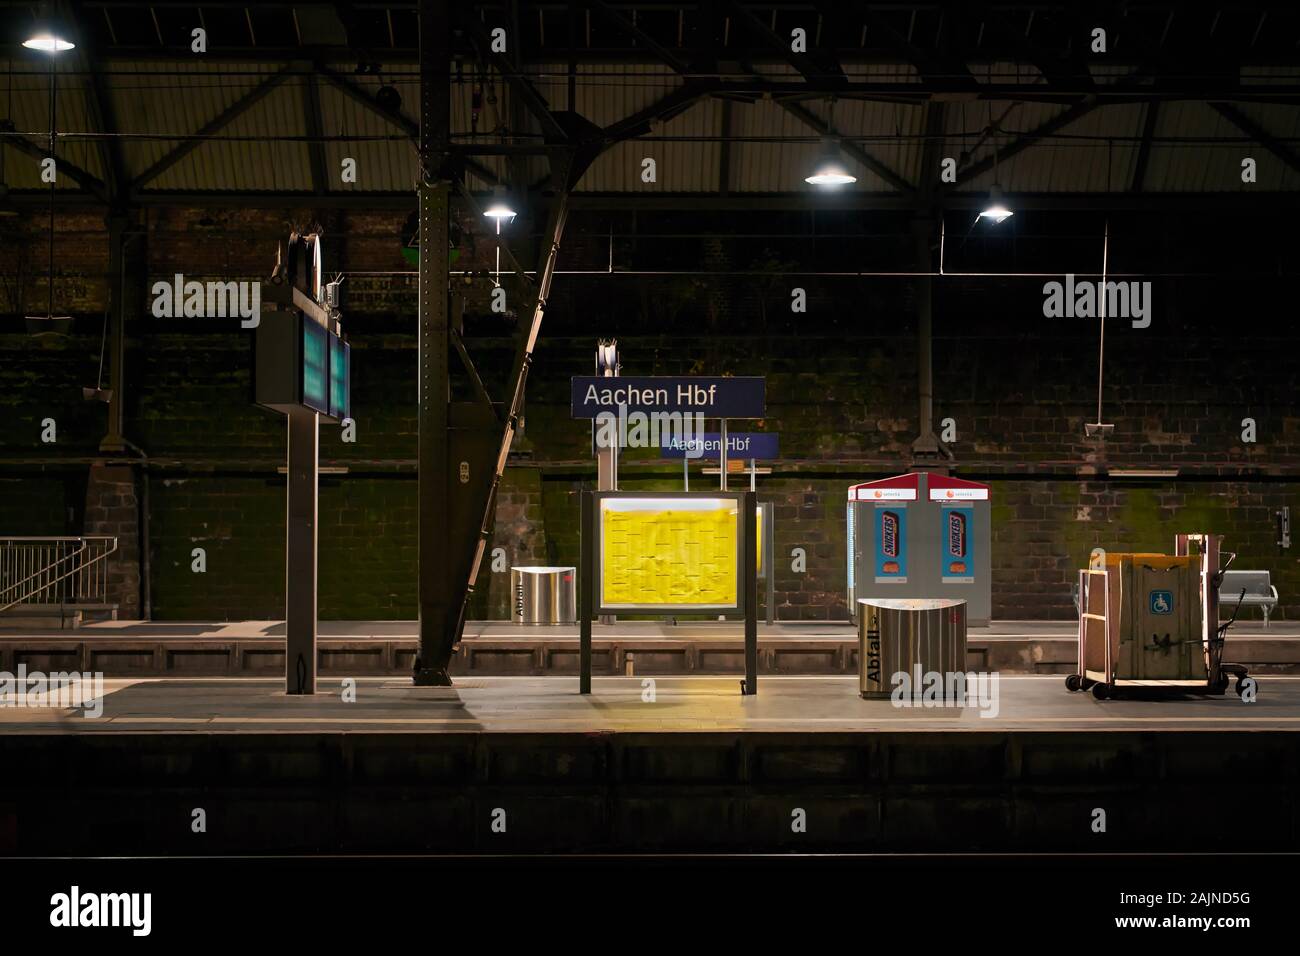 Aachen, Deutschland: Blick auf eine leere, saubere Plattform in Aachen Hauptbahnhof bei Nacht mit künstlicher Beleuchtung Stockfoto